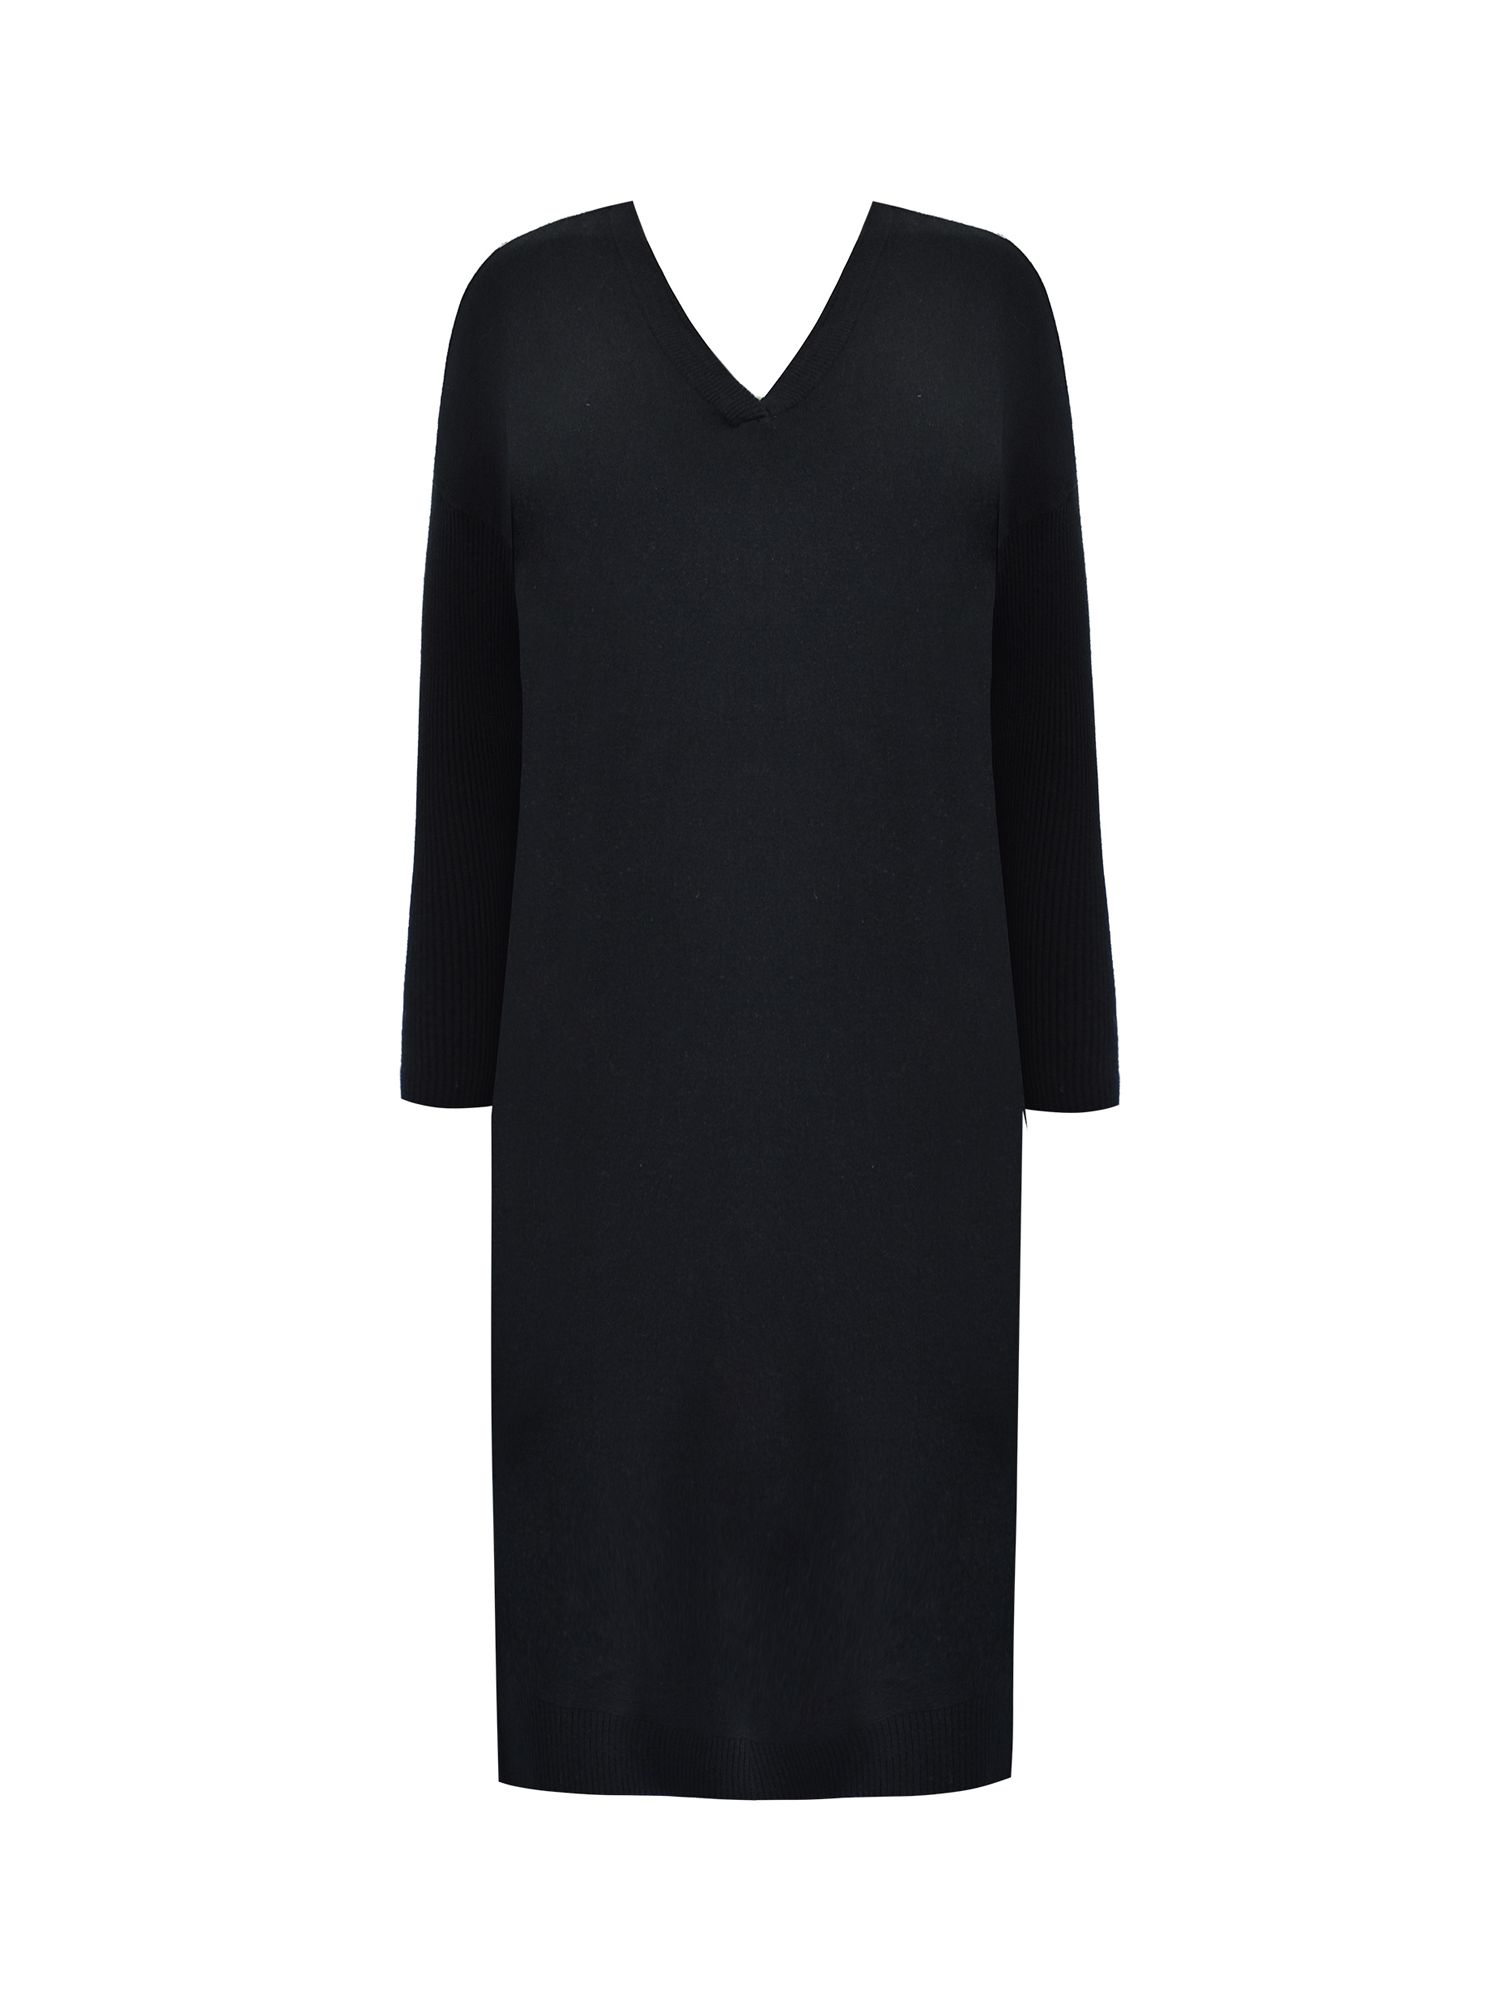 Live Unlimited Curve Cashmere Blend V-neck Dress, Black, 16